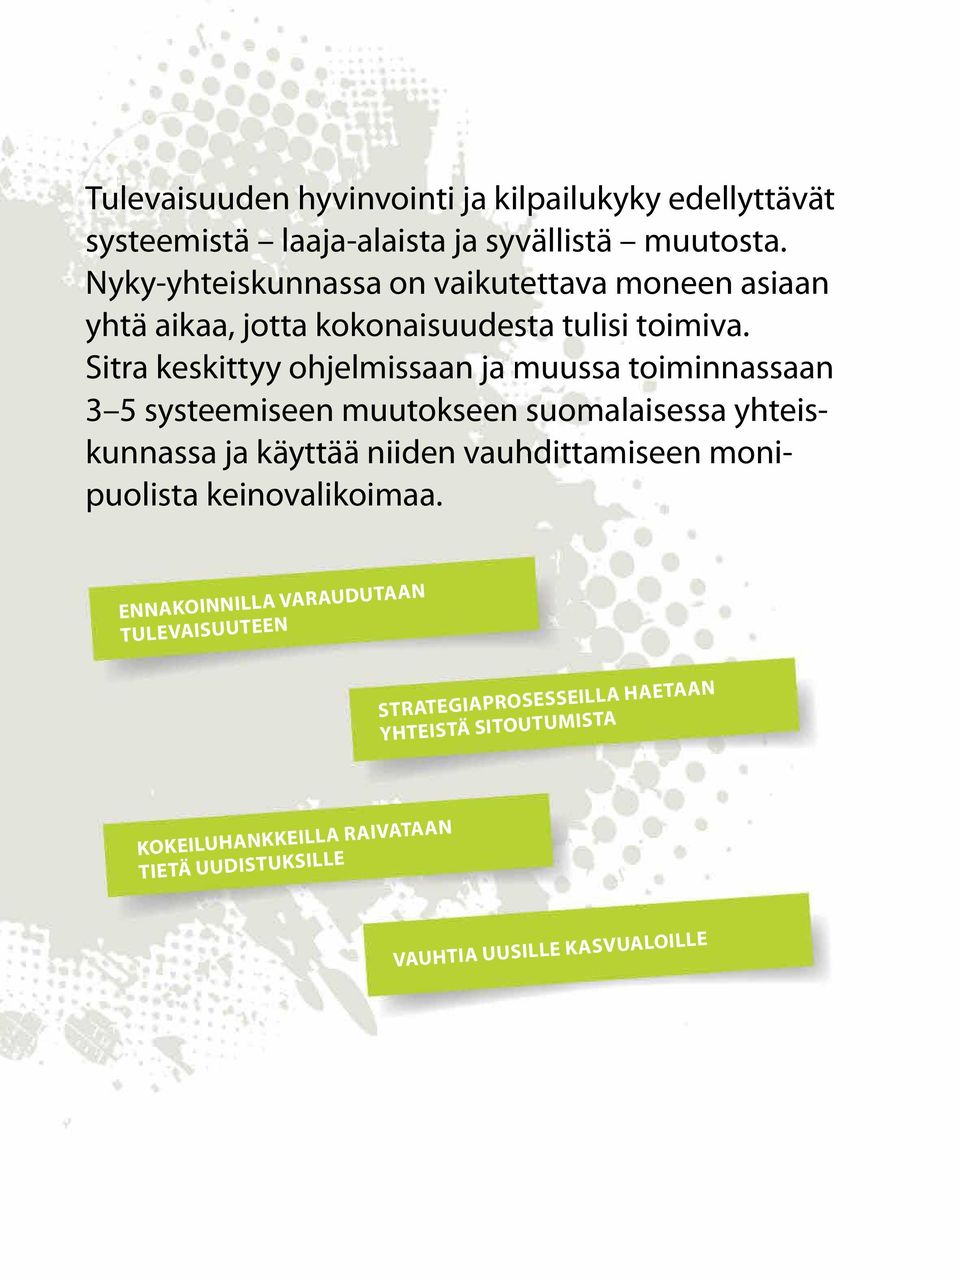 Sitra keskittyy ohjelmissaan ja muussa toiminnassaan 3 5 systeemiseen muutokseen suomalaisessa yhteiskunnassa ja käyttää niiden